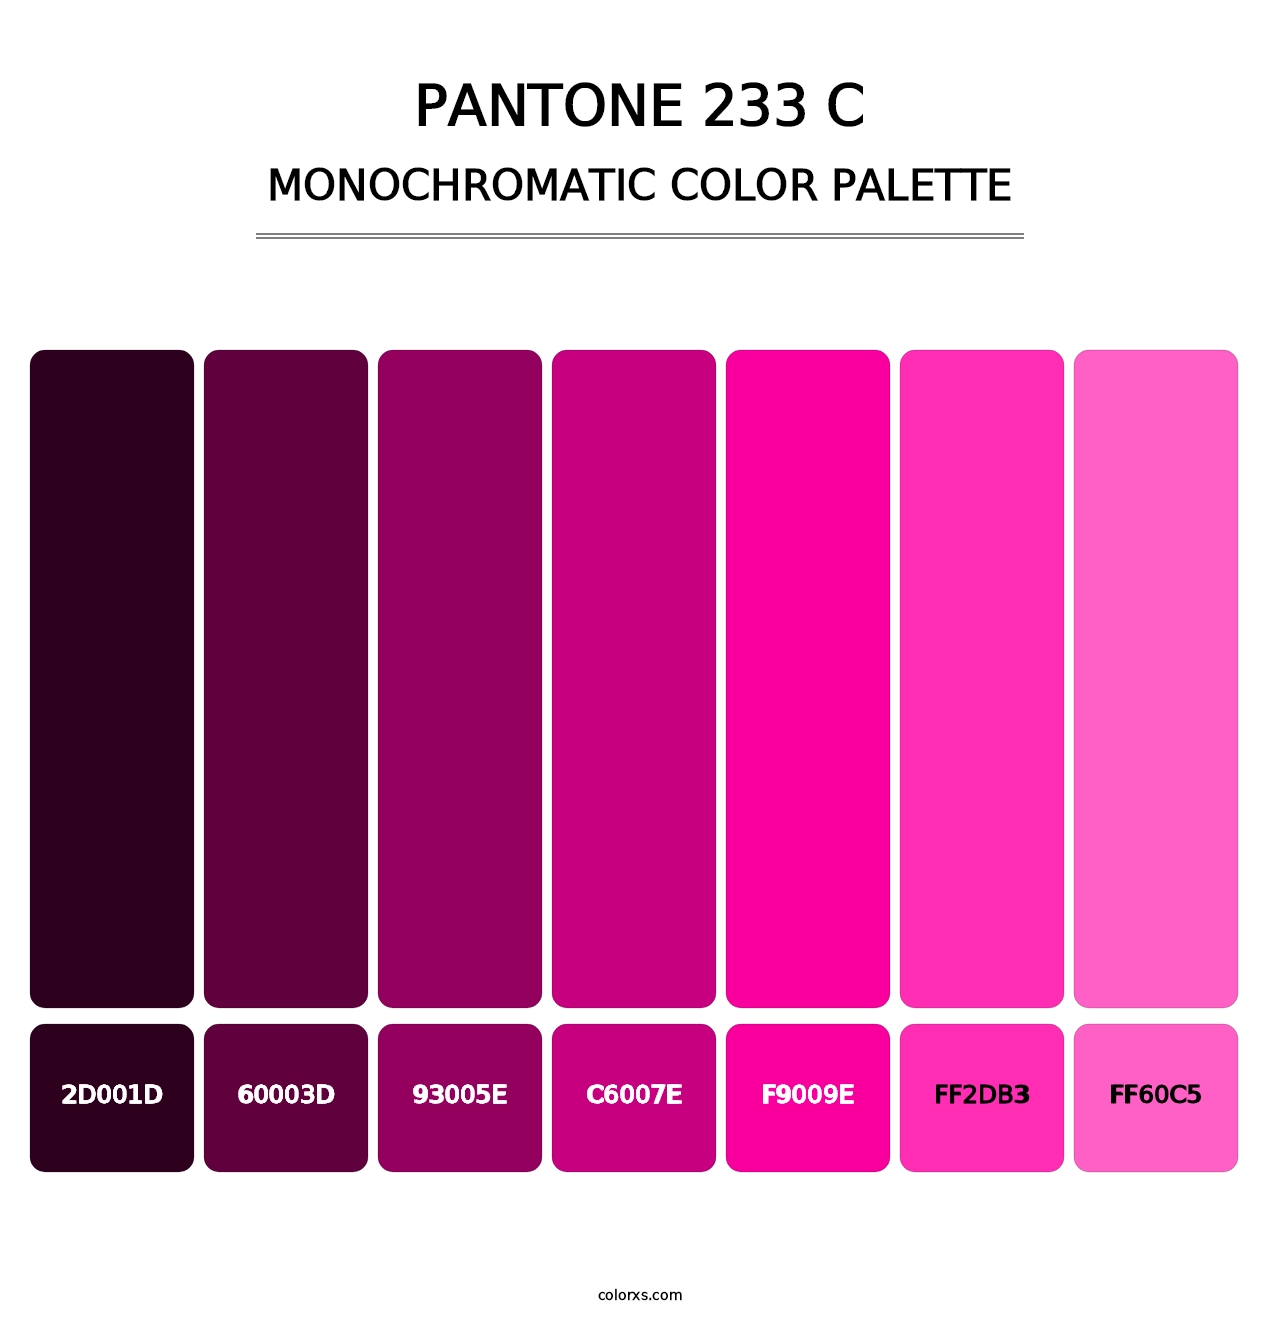 PANTONE 233 C - Monochromatic Color Palette